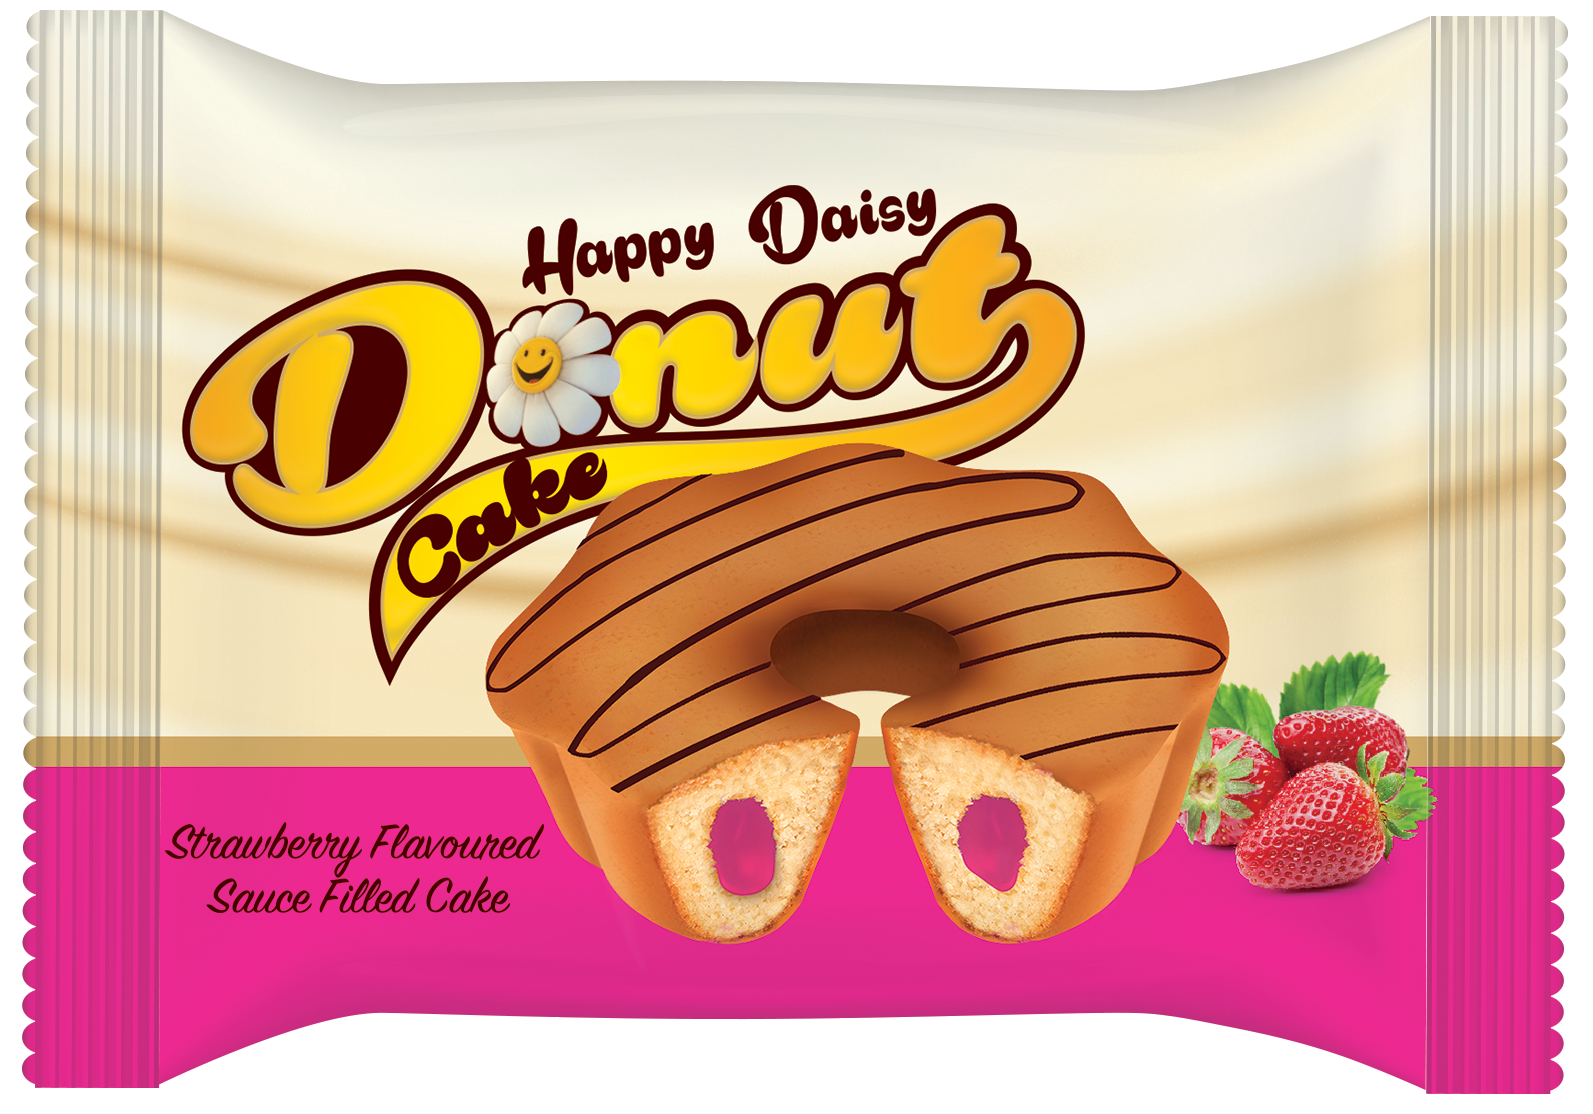 Happy Daisy Donut Cake 